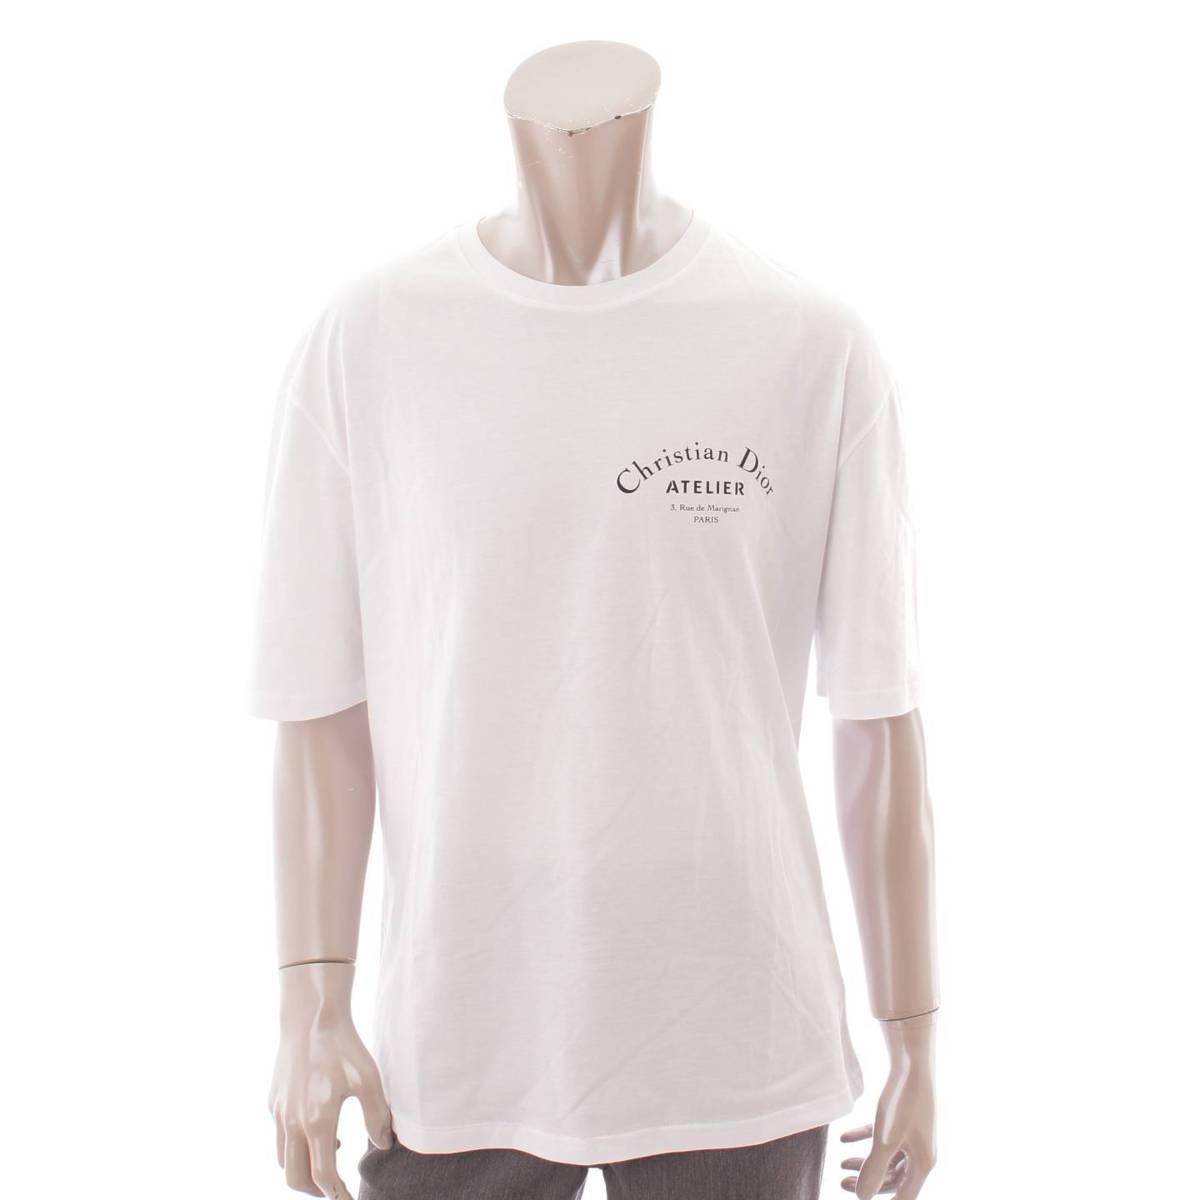 ディオール(Dior) メンズ アトリエ ロゴ プリント Tシャツ トップス 863J621I2712 ホワイト M